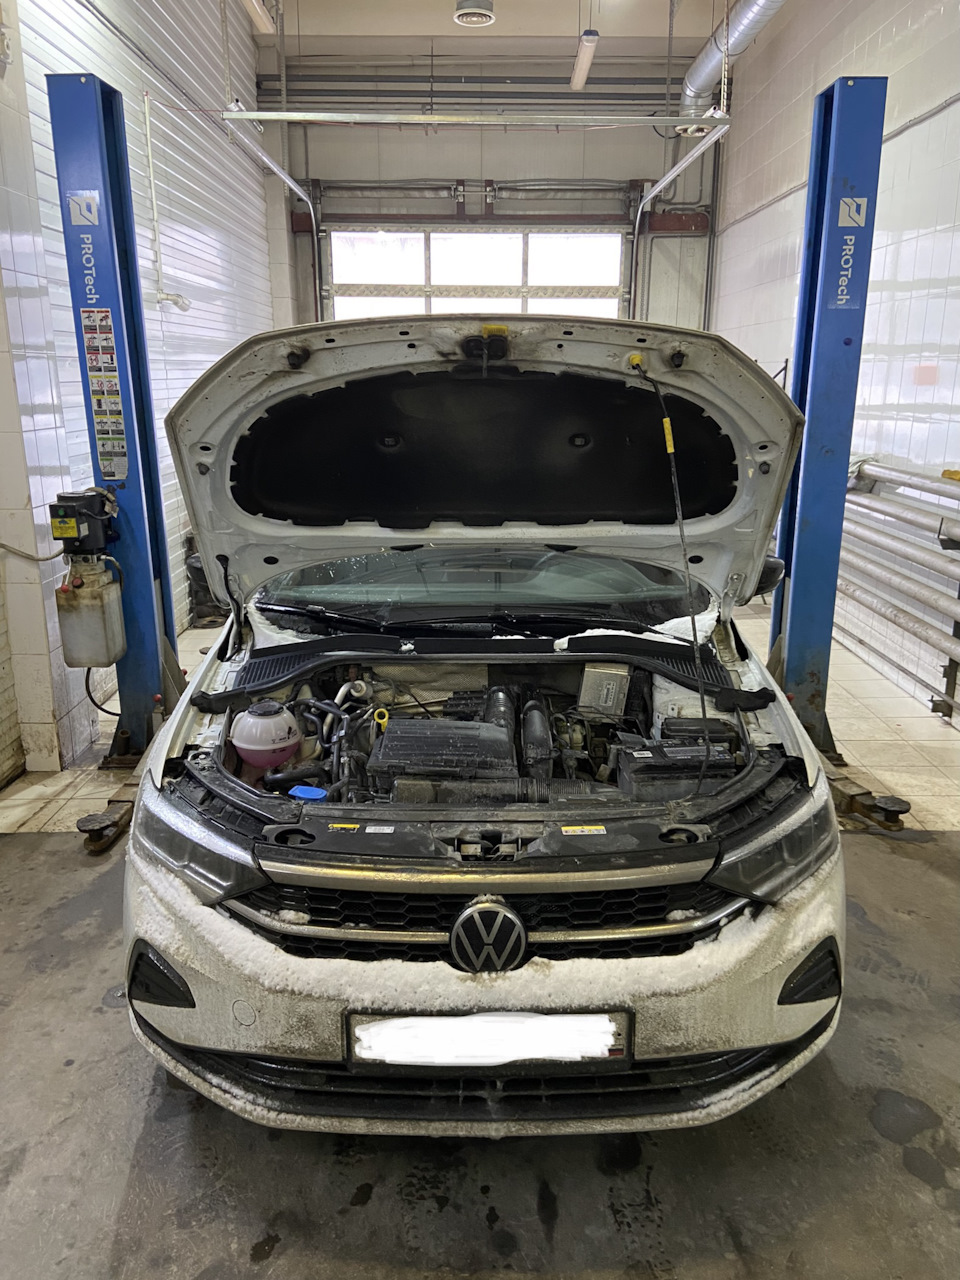 Техническое обслуживание Volkswagen как обязательная профилактическая мера